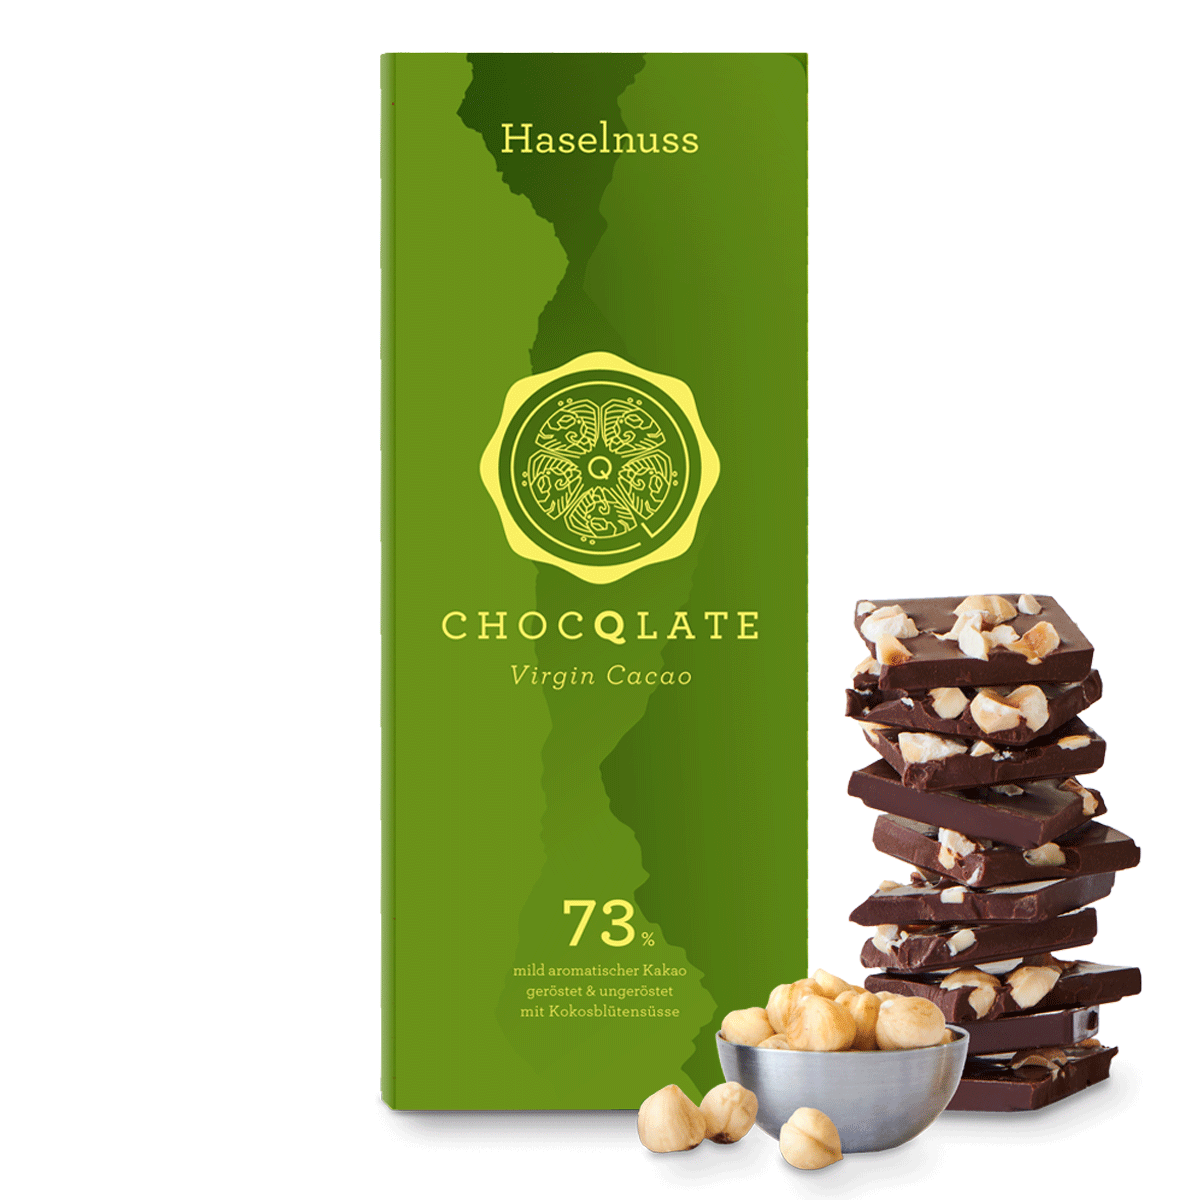 CHOCQLATE cioccolato biologico nocciola con cacao vergine